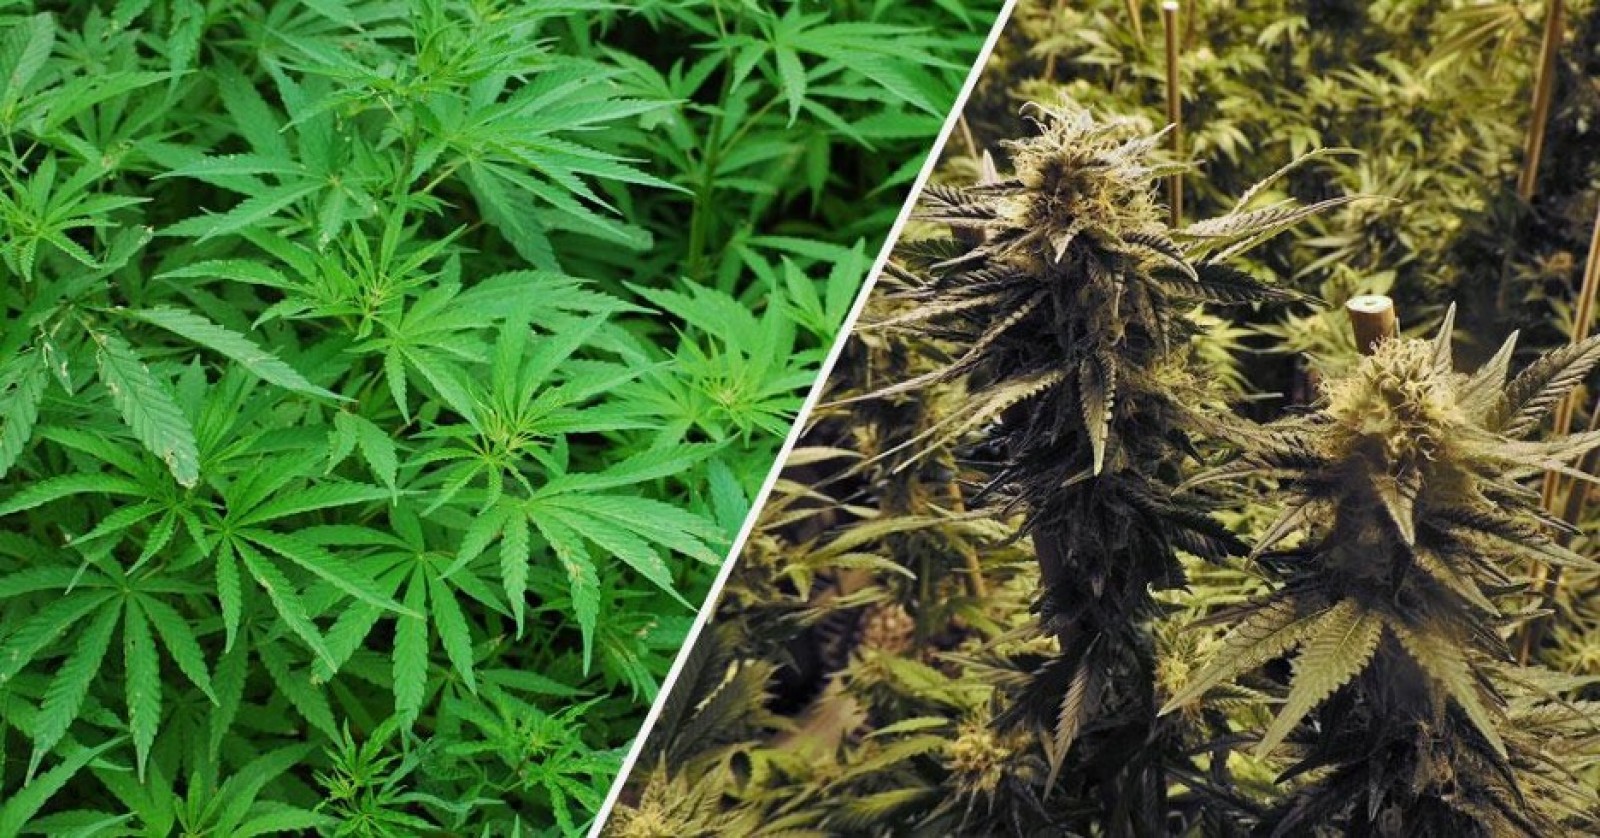 Hemp vs Marijuana: What’s the Difference?